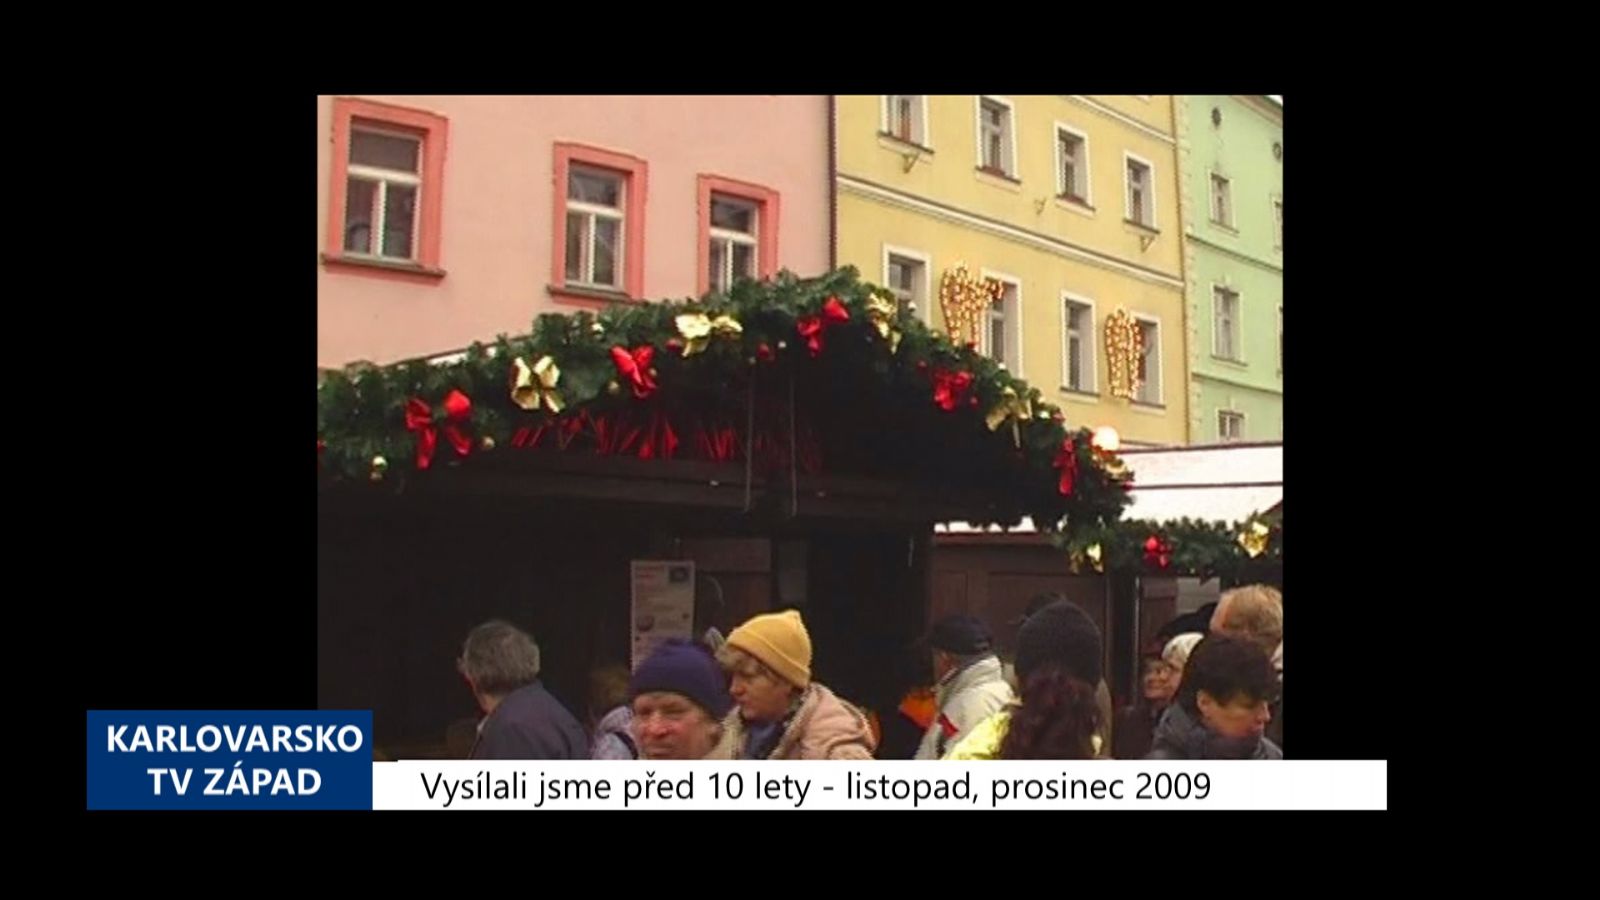 2009 – Cheb: Startují tradiční trhy na náměstí (3905) (TV Západ)